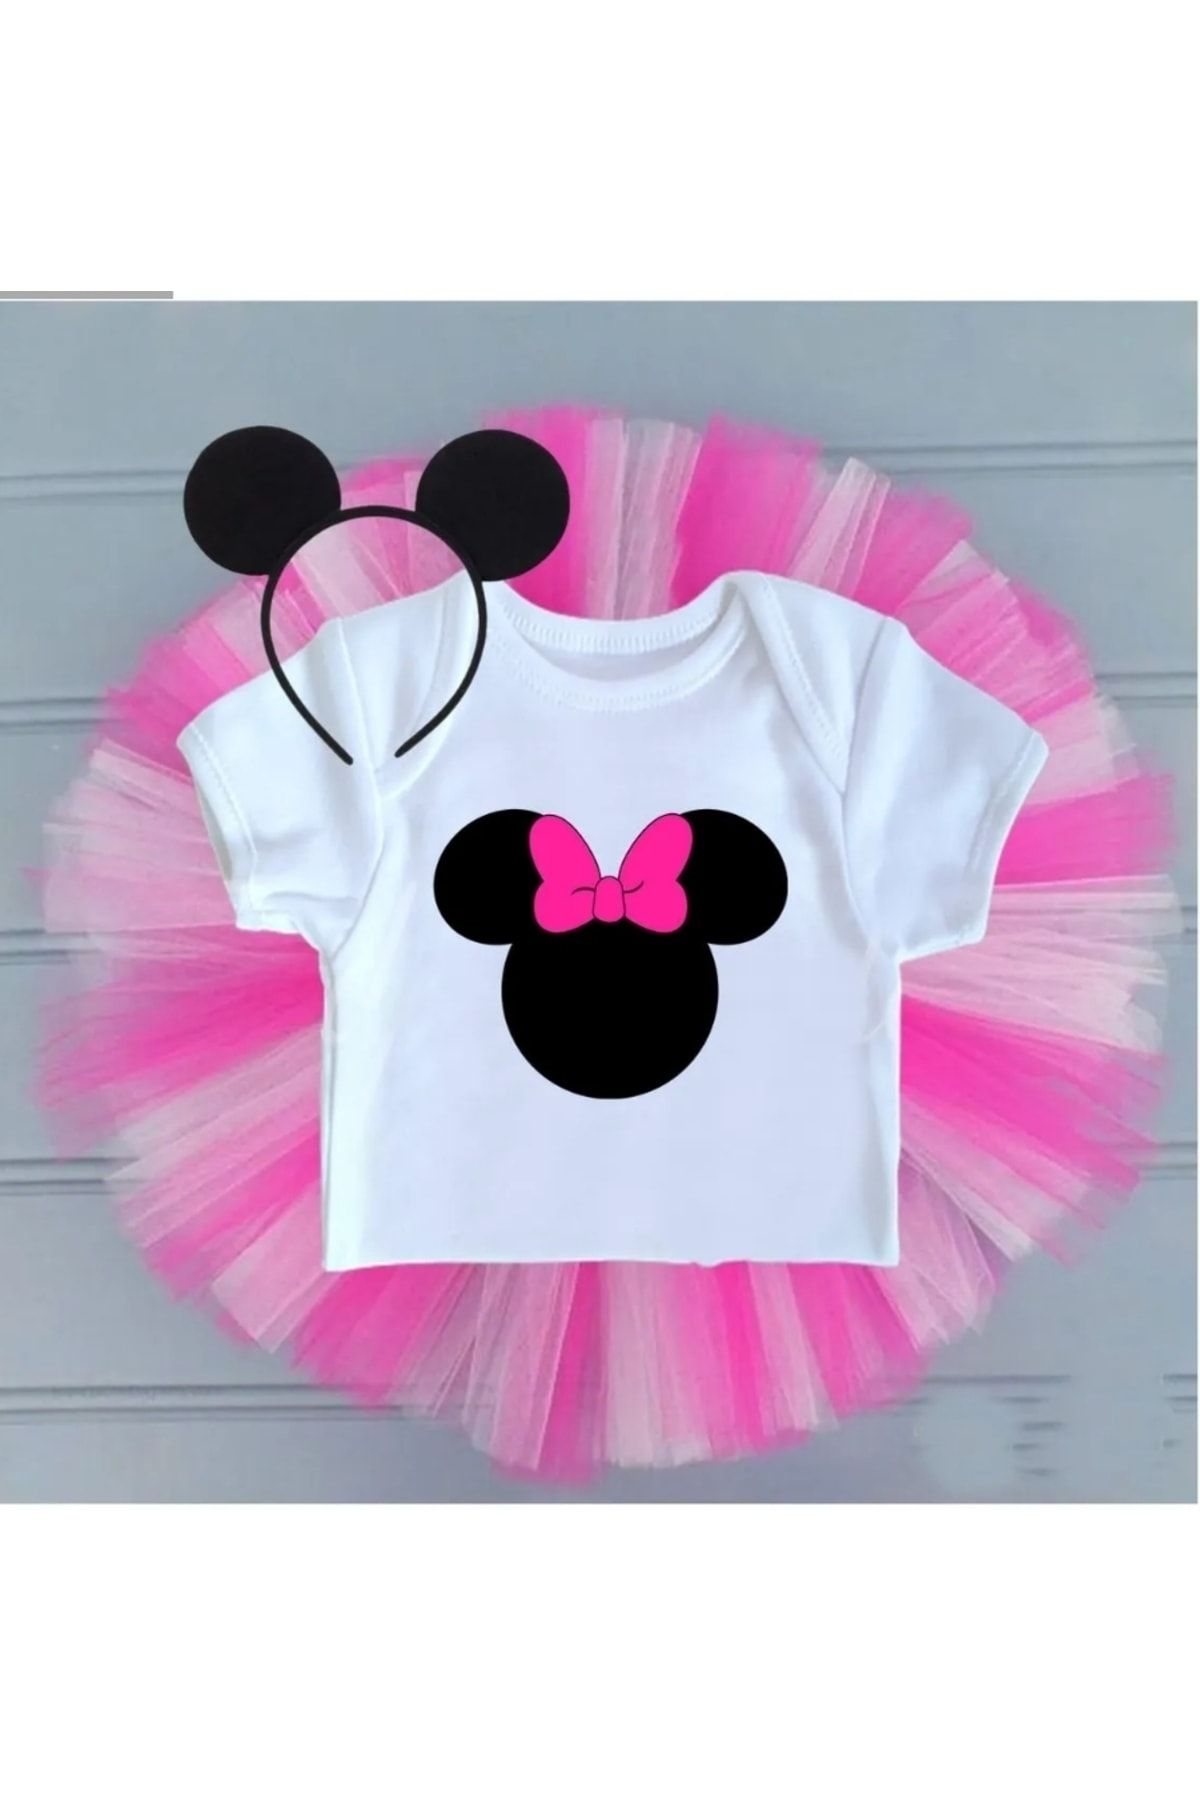 Minnie Mouse dress- Minnie Mouse tutu dress-Minnie Mouse costume-Minnie  mouse birthday